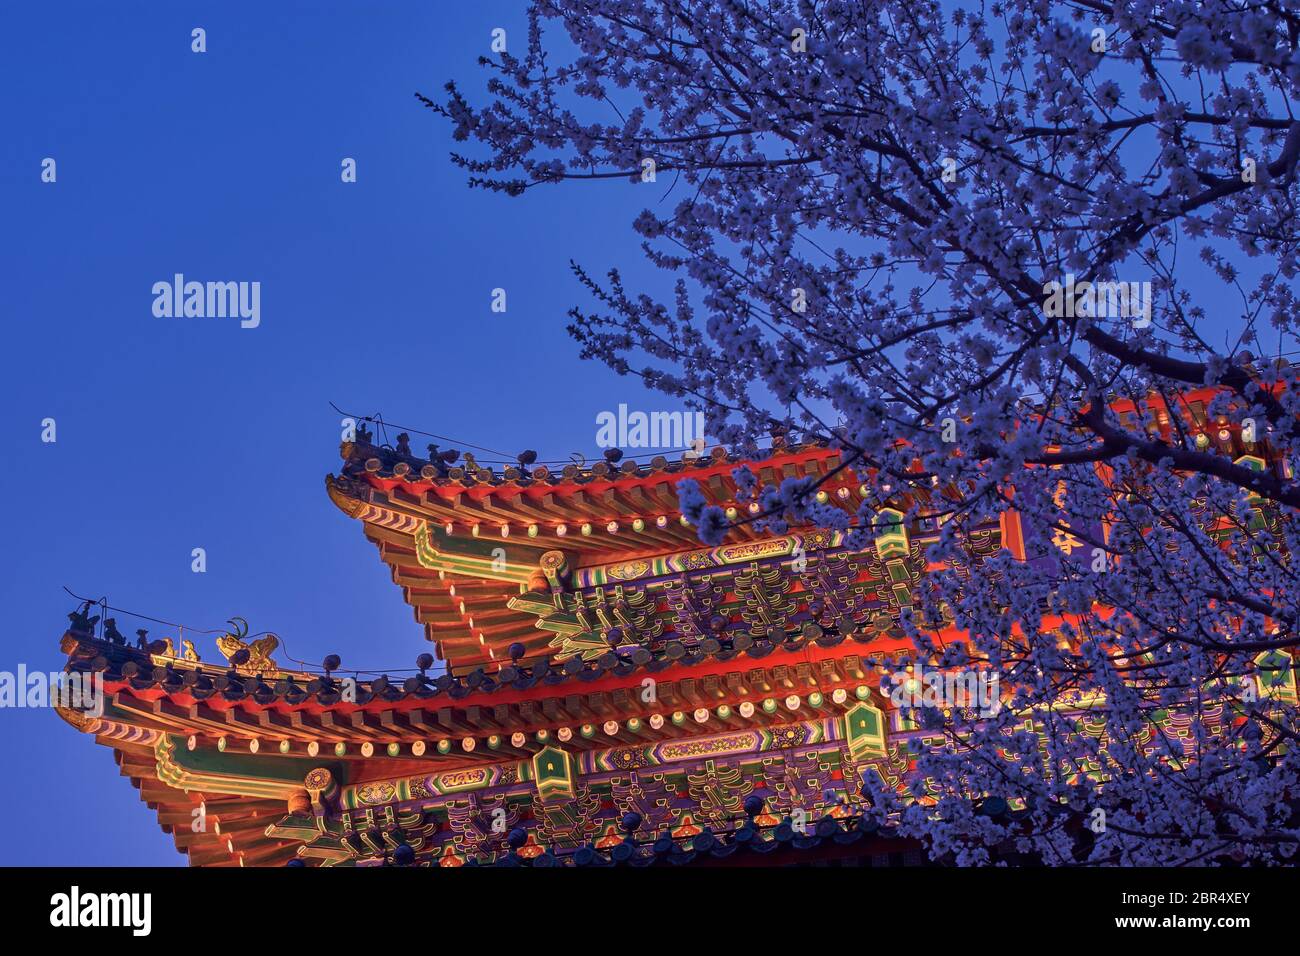 Vista notturna della pagoda illuminata sulla cima del parco di Jingshan, Prospect Hill, nel centro di Pechino, con un albero di ciliegio fiorito Foto Stock